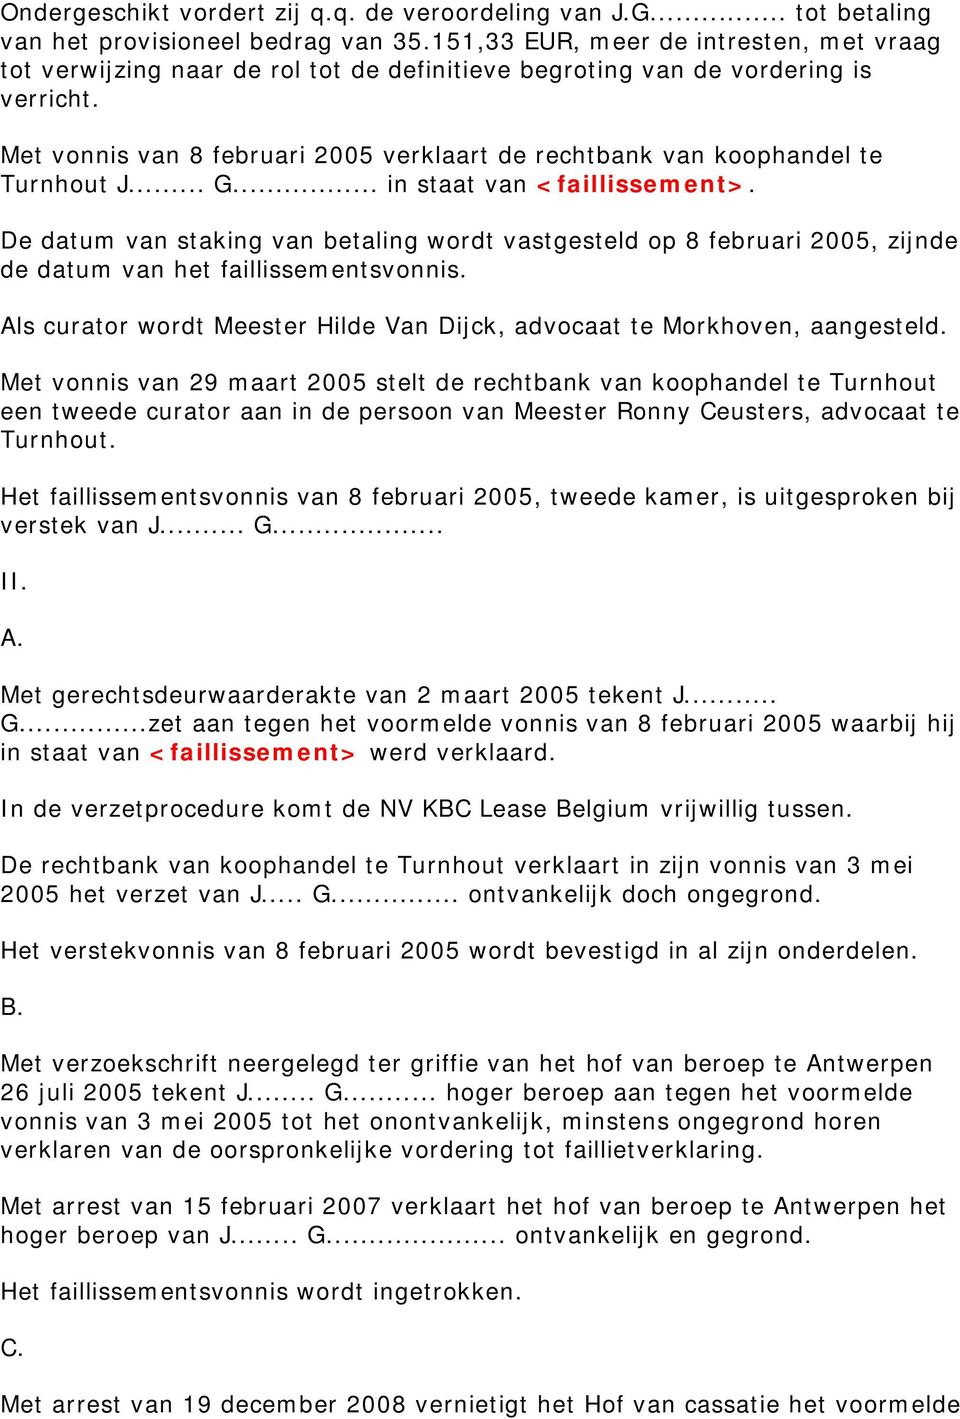 Met vonnis van 8 februari 2005 verklaart de rechtbank van koophandel te Turnhout J... G... in staat van <faillissement>.